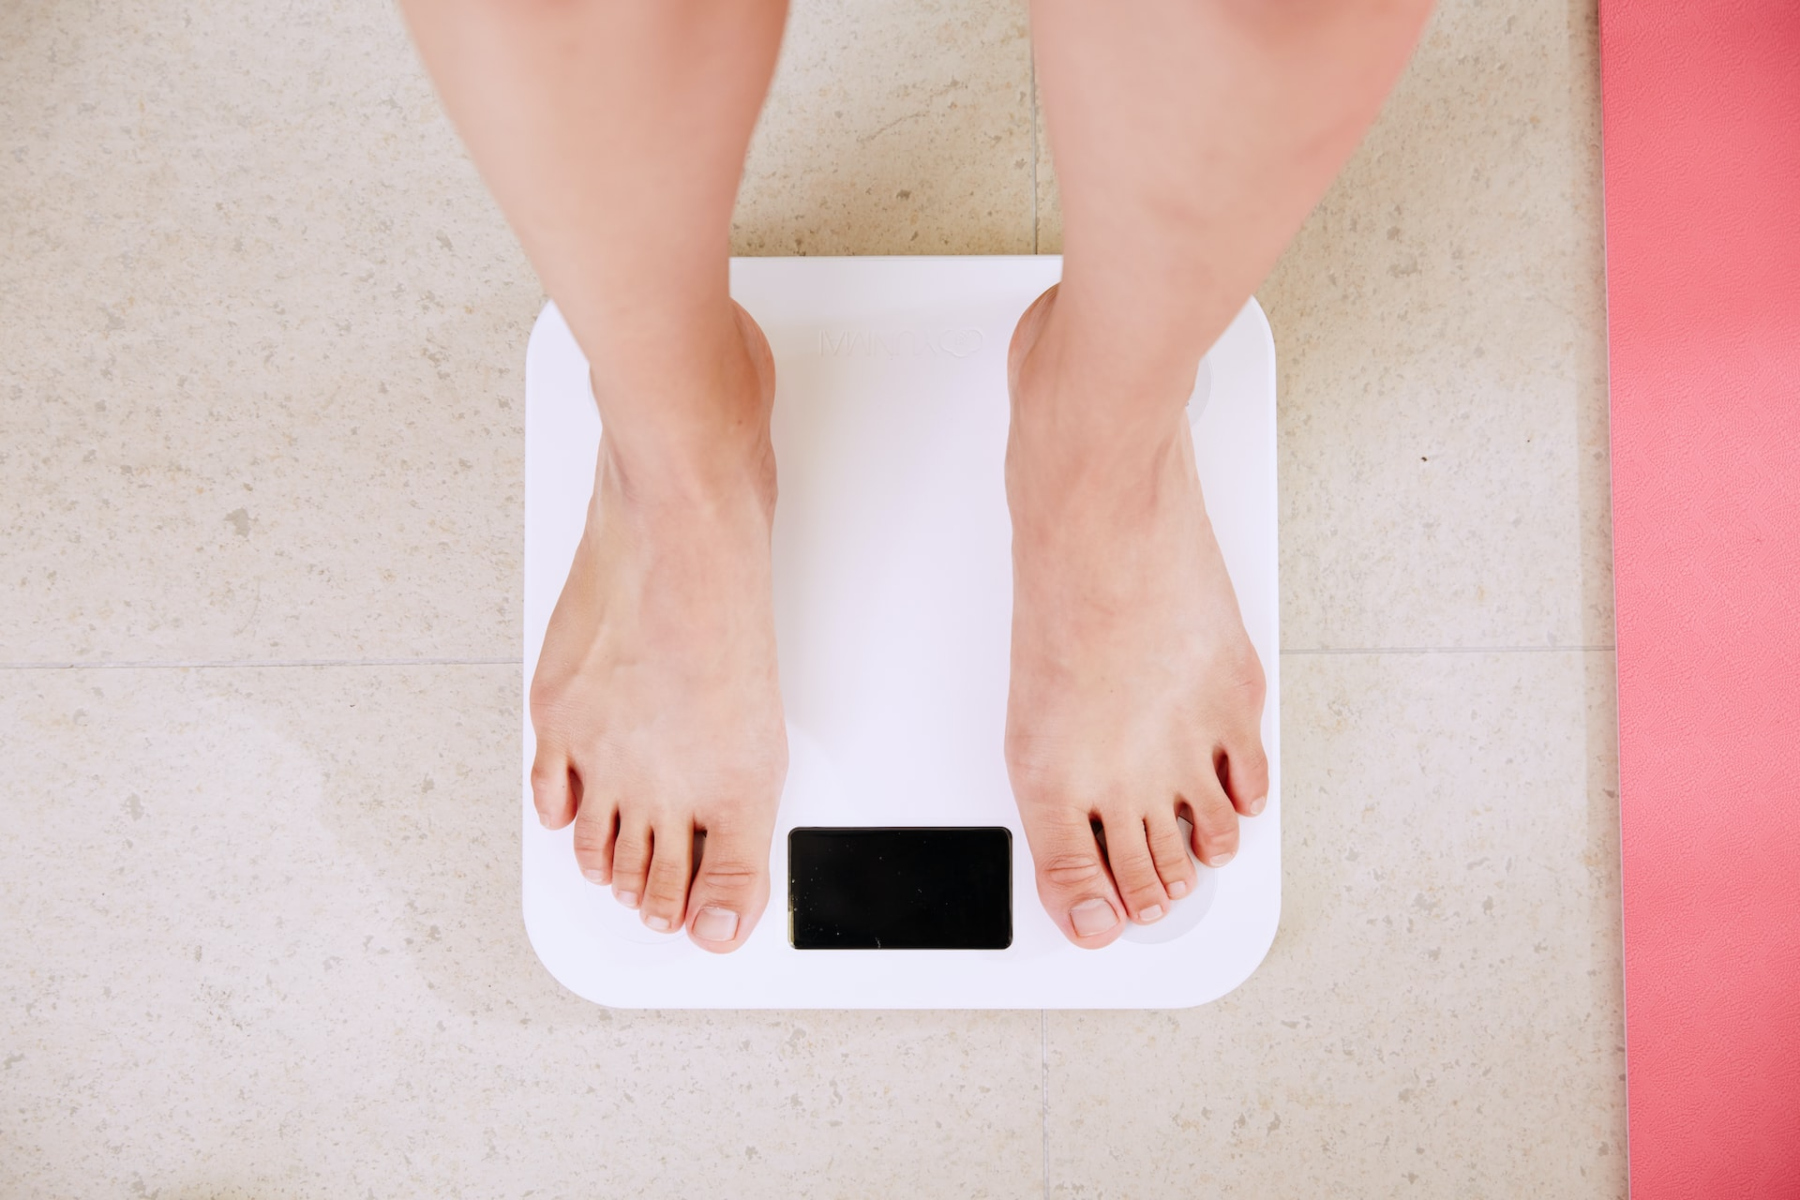 ΔΕΠΥ: Η παχυσαρκία και ο διαβήτης μπορεί να επηρεάσουν την μελλοντική υγεία του νεογέννητου